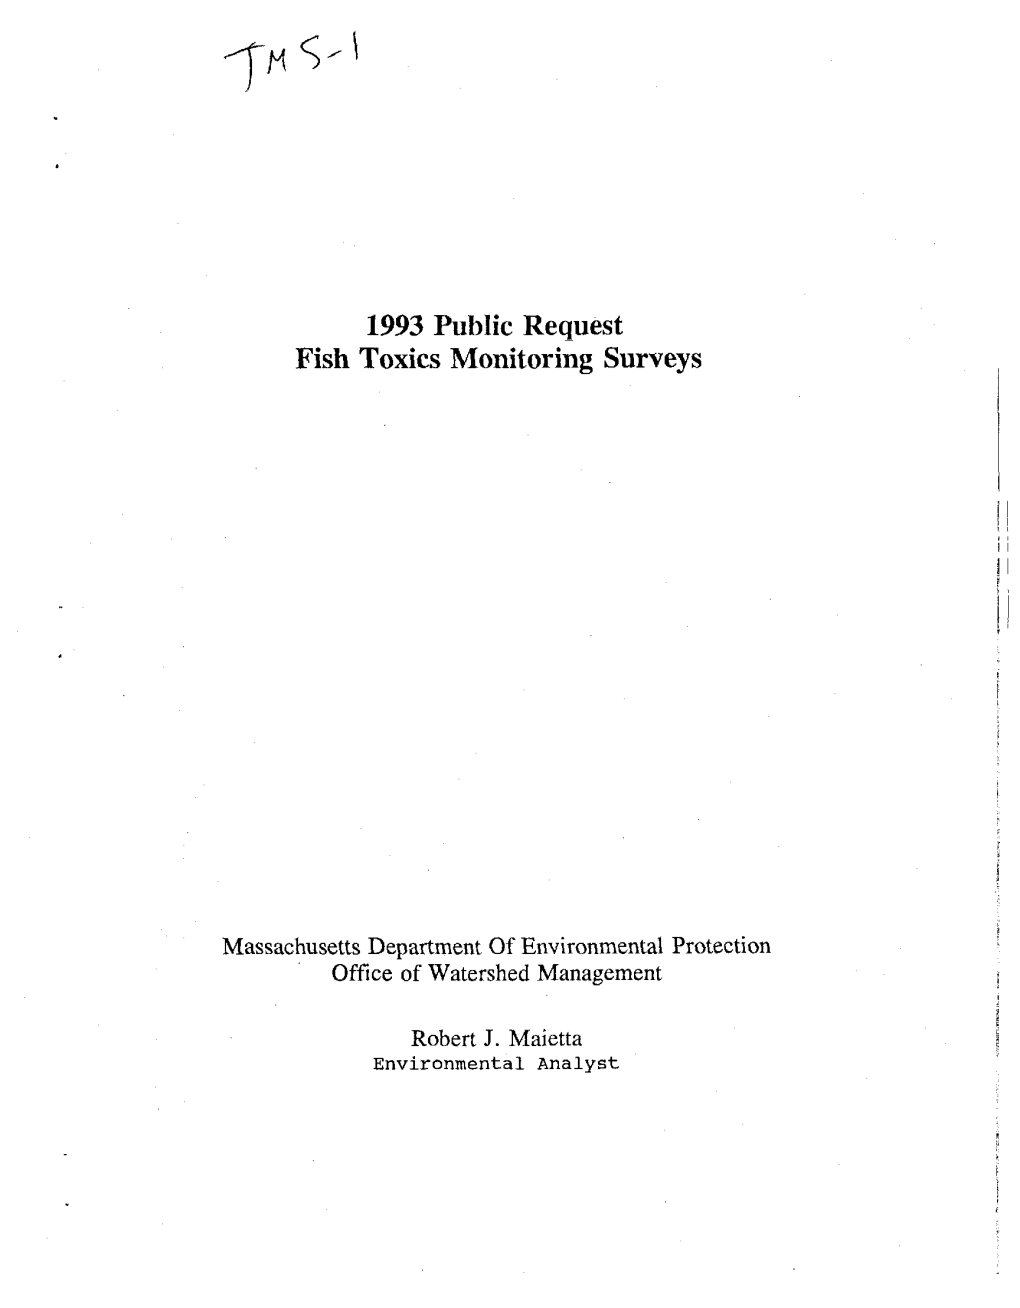 1993 Public Request Fish Toxics Monitoring Surveys